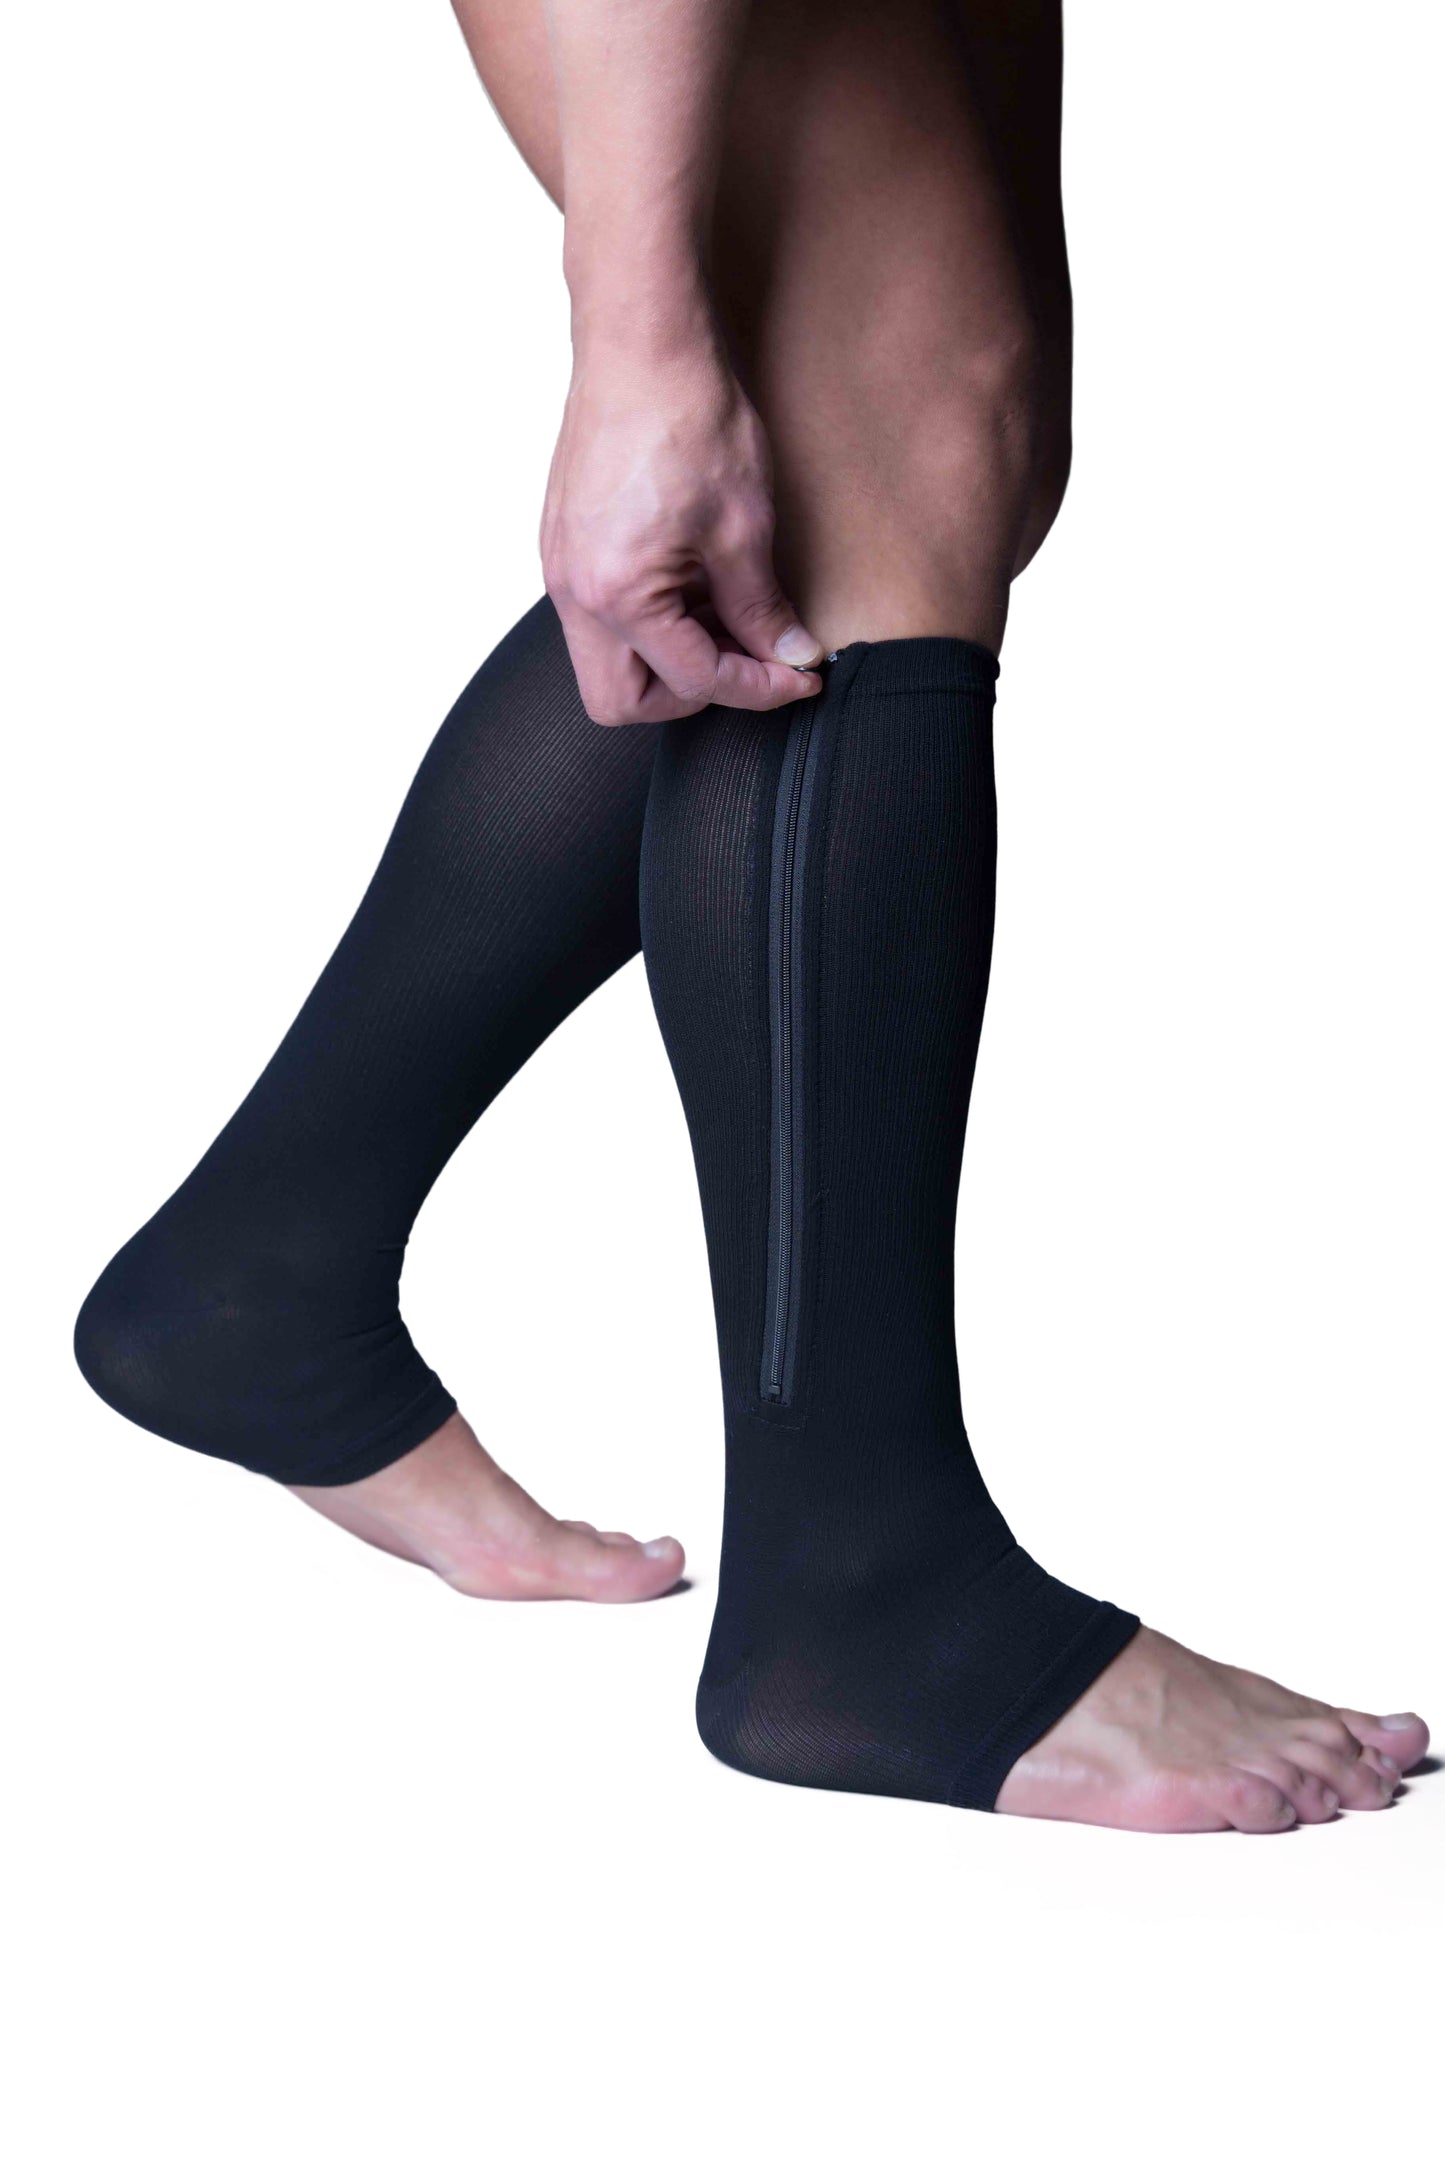 Vital Socks 3x1  - Compression Socks